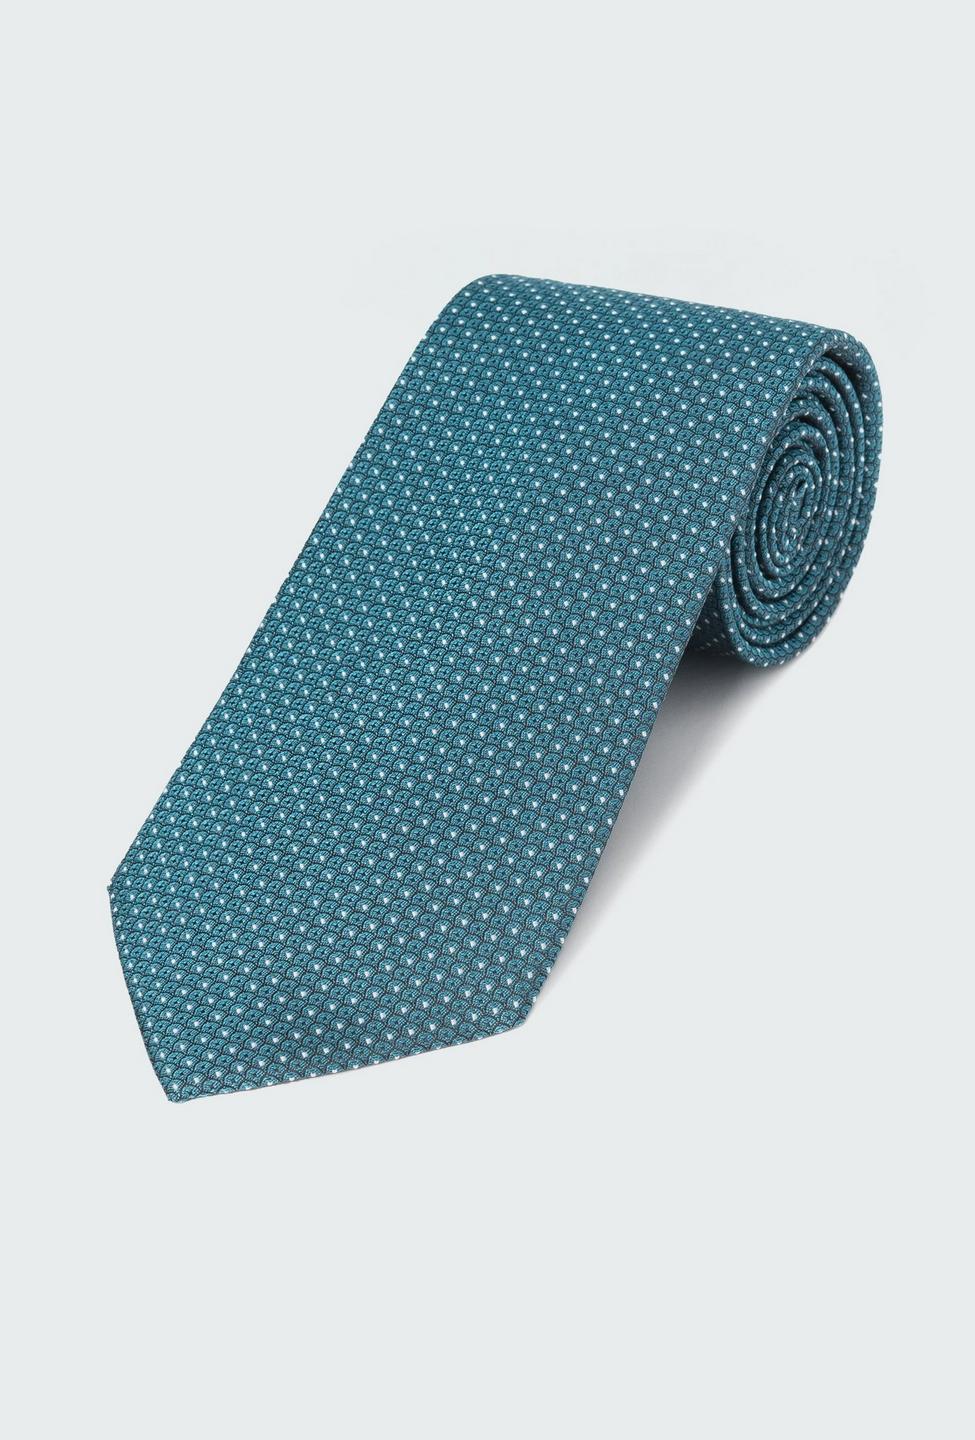 Teal Micro Foulard Tie